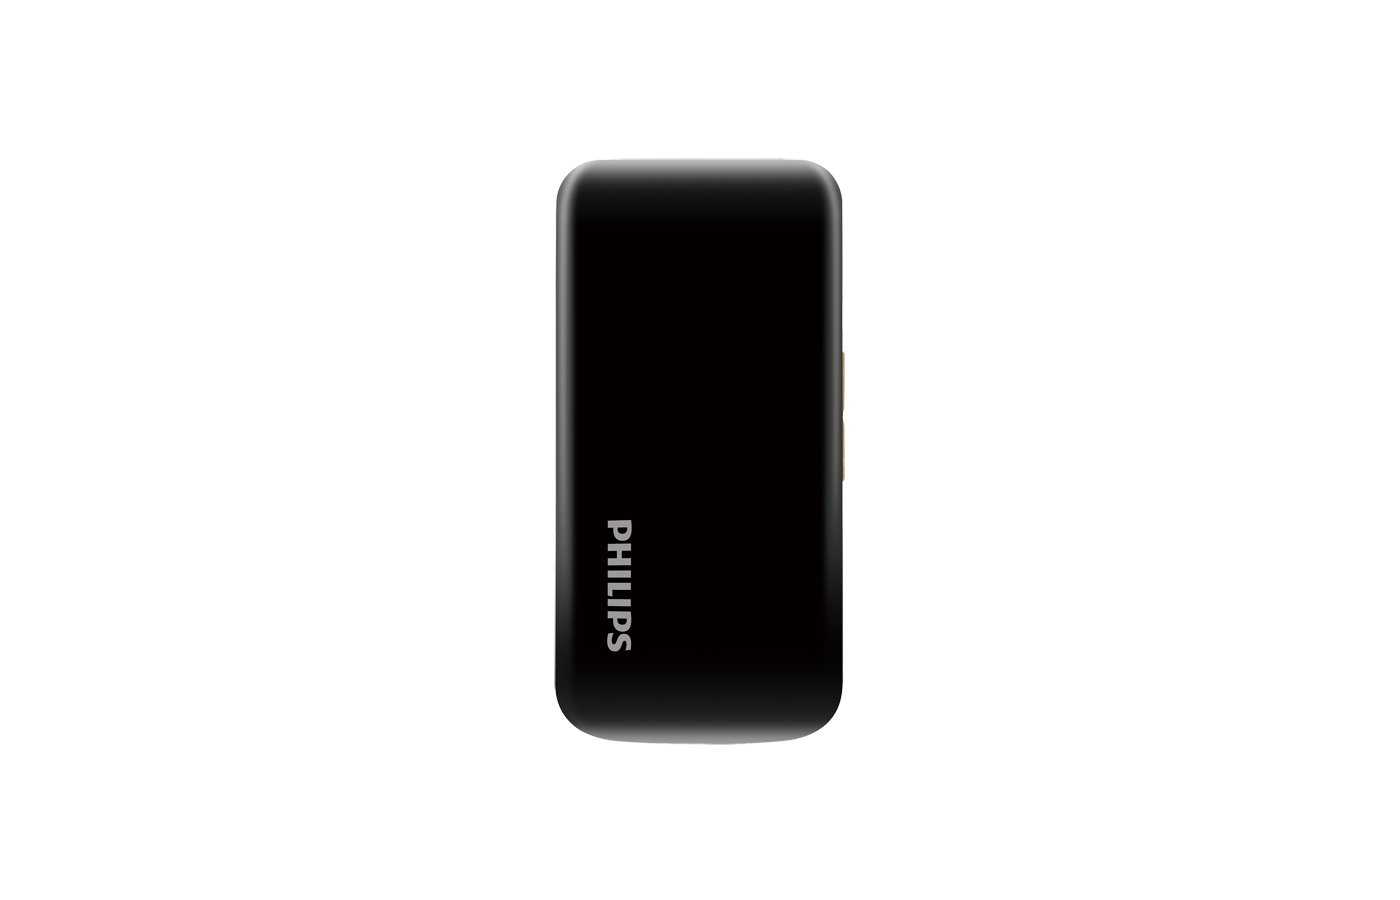 Philips xenium e255 (белый) - купить , скидки, цена, отзывы, обзор, характеристики - мобильные телефоны